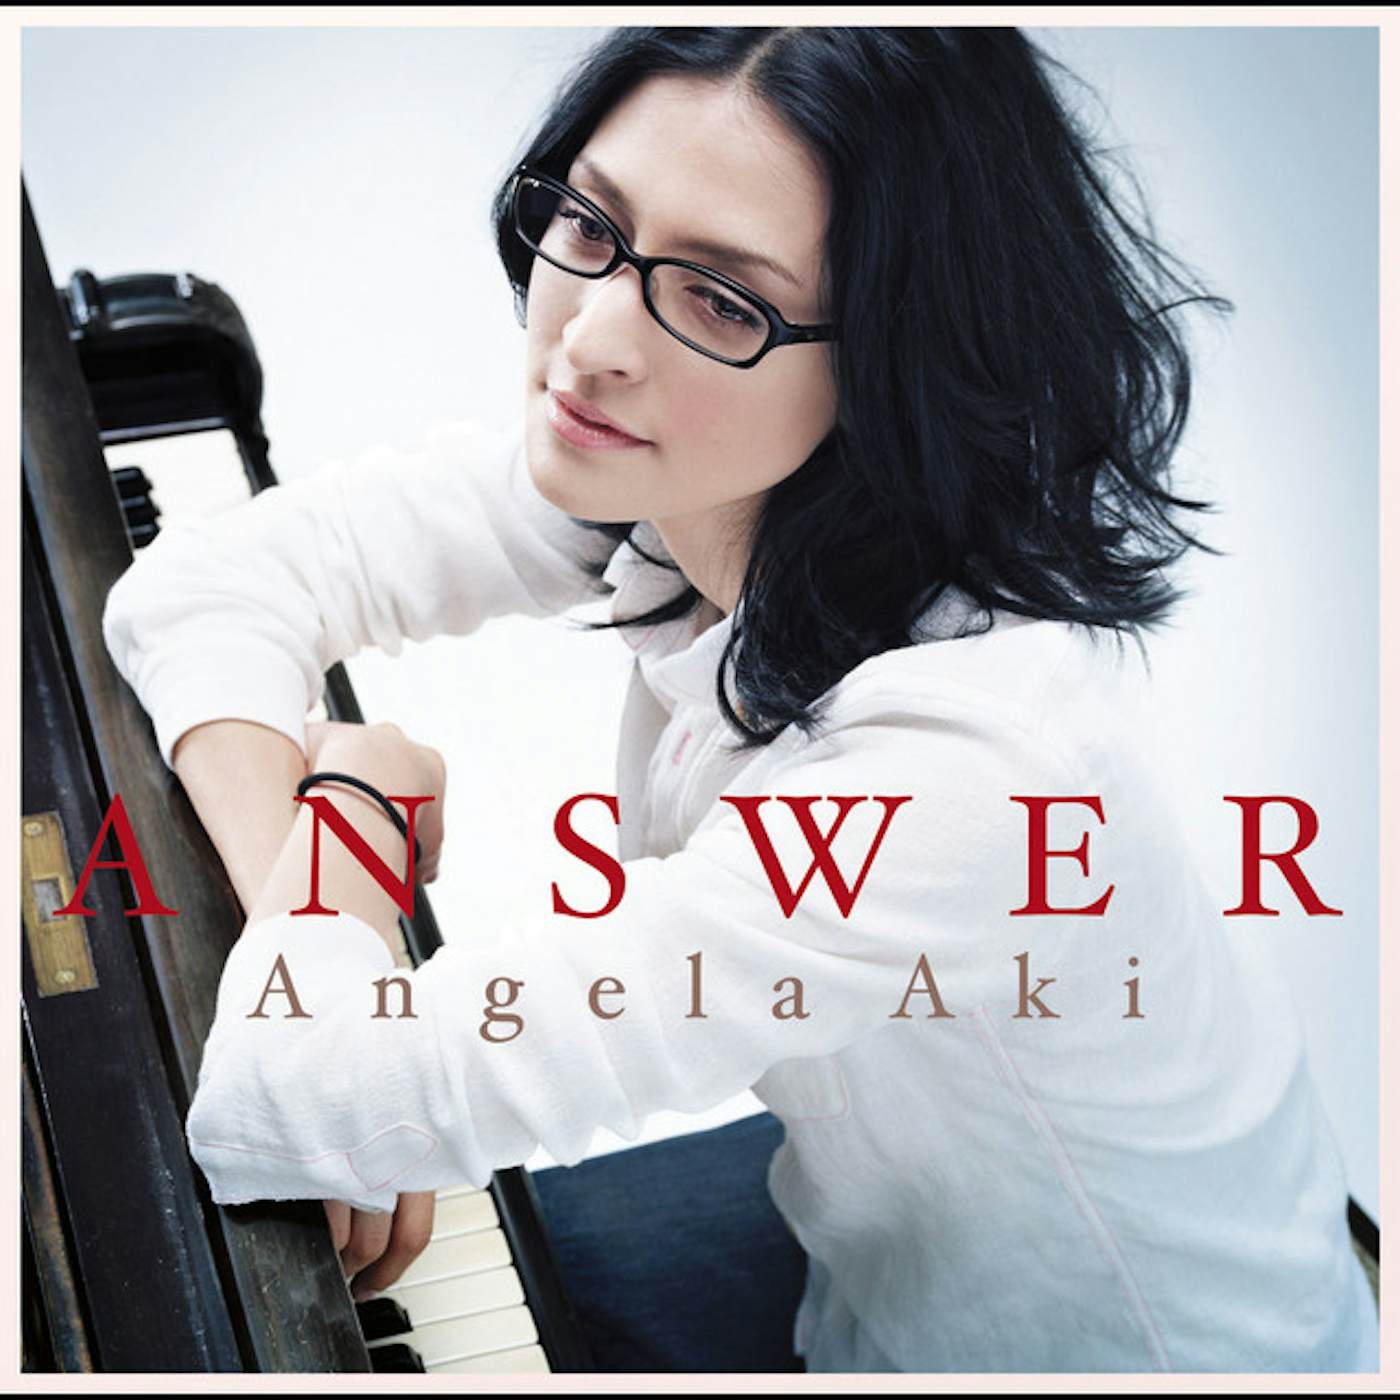 Angela Aki ANSWER CD